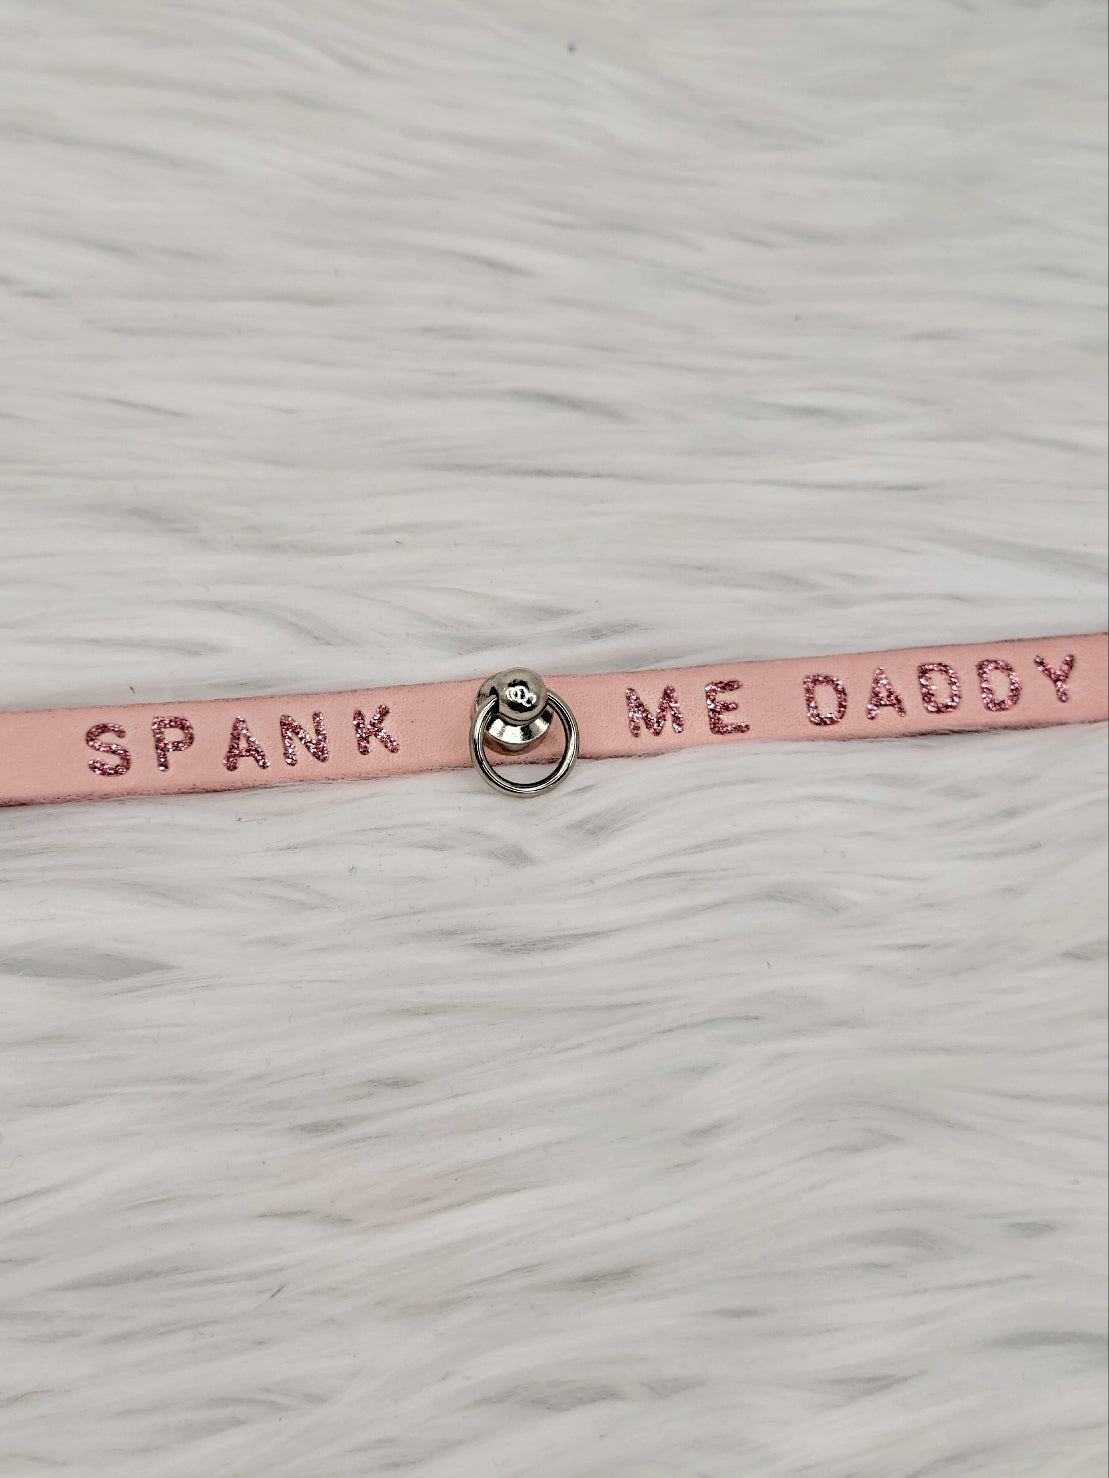 Spank Me Daddy